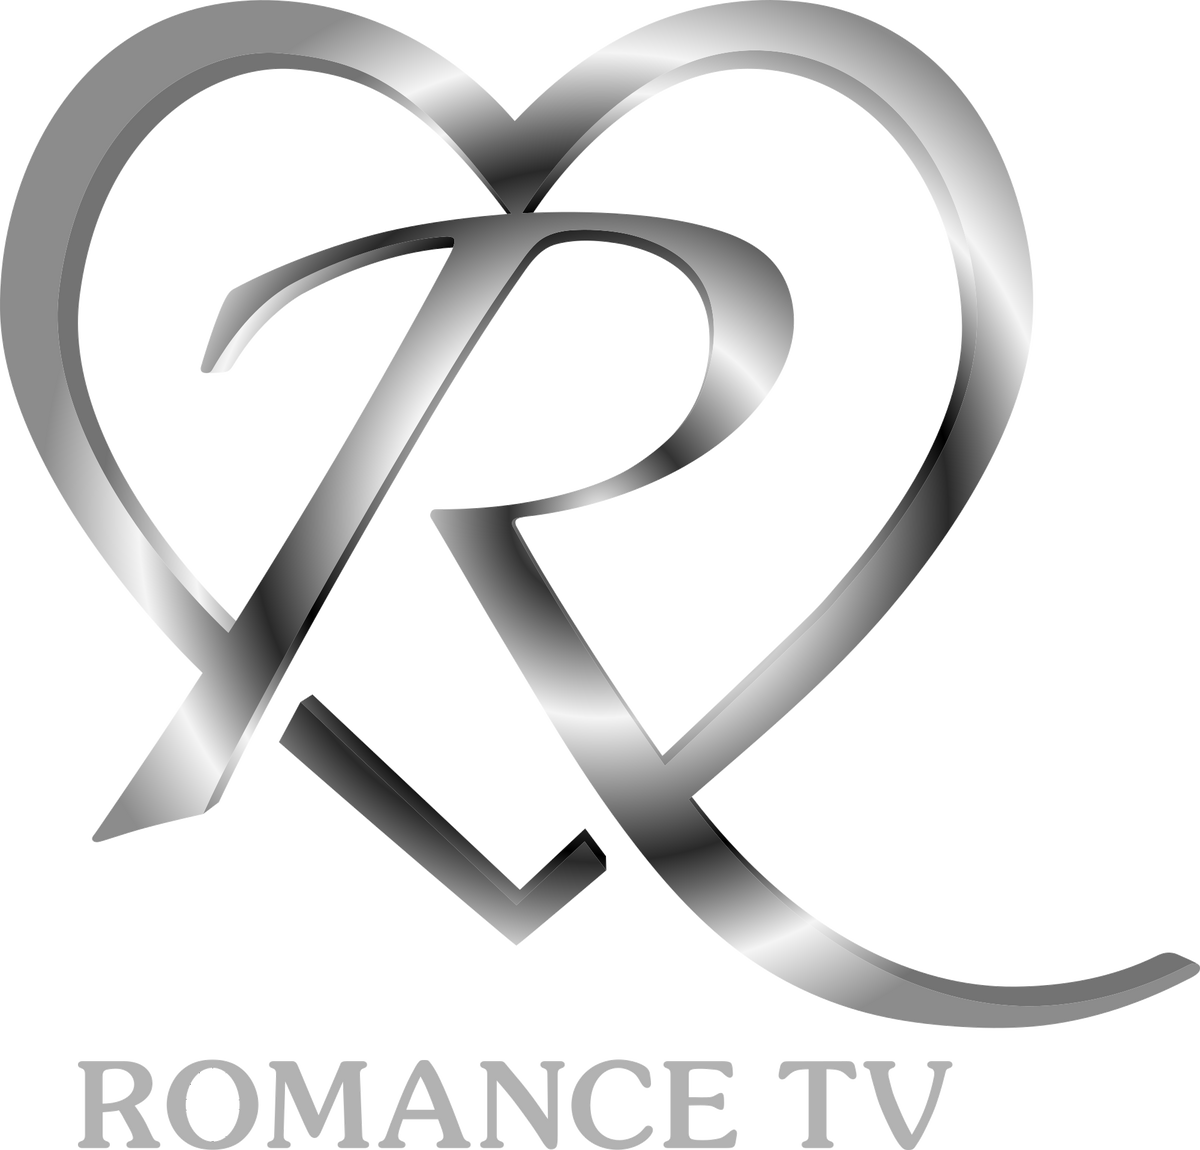 Логотип романса. Телеканал романс. Русский романс канал логотип. Club of Romance logo сб. Тв romance